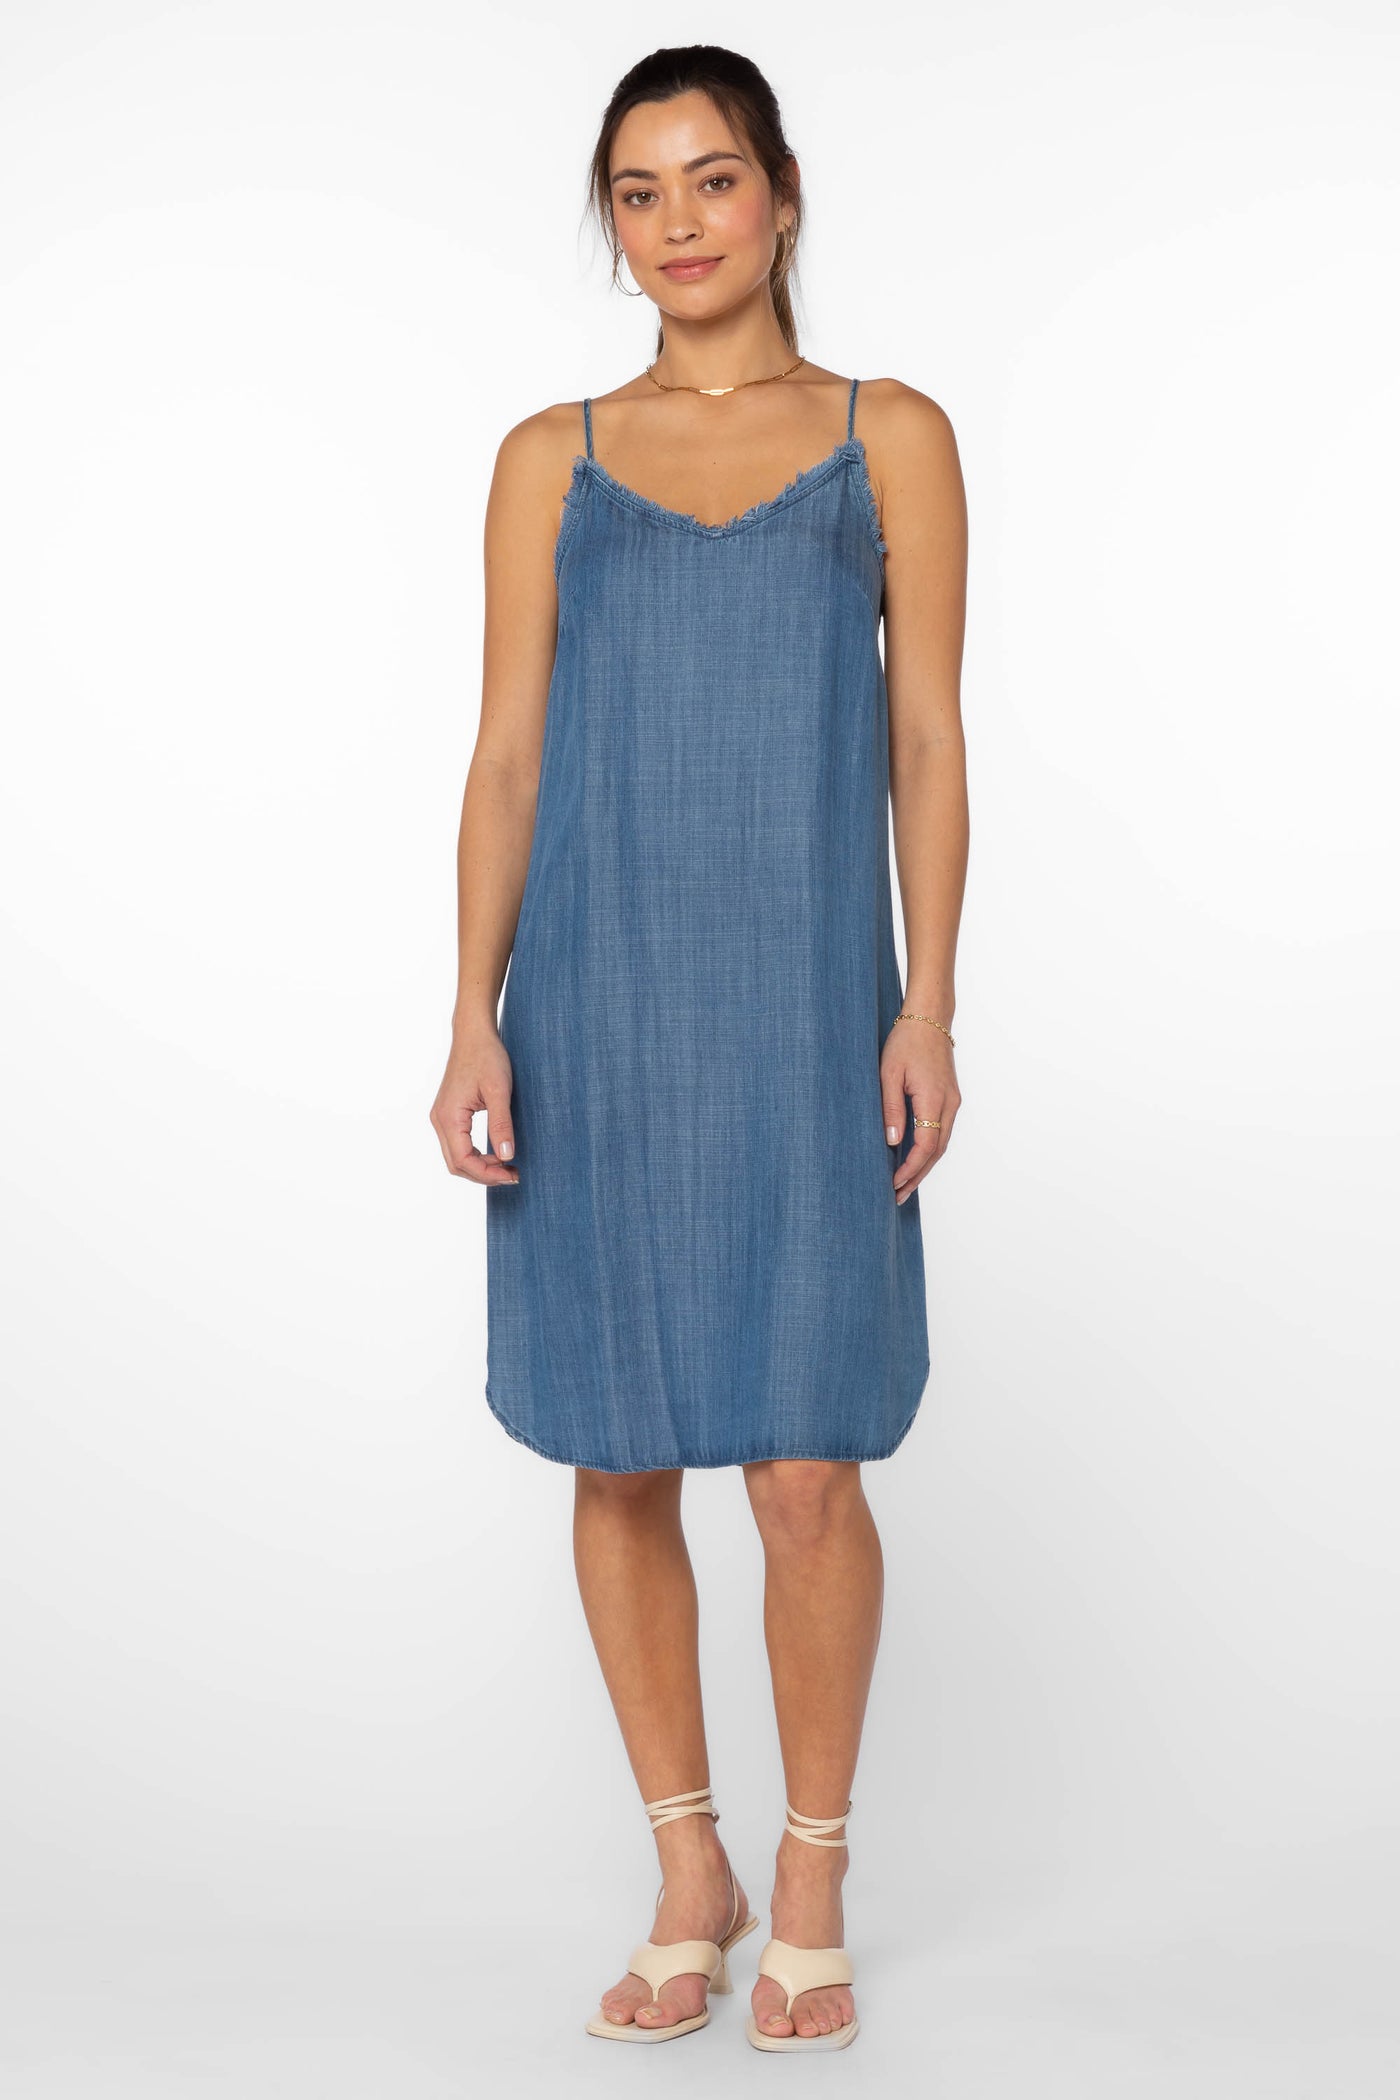 Merrit Blue Dress - Dresses - Velvet Heart Clothing